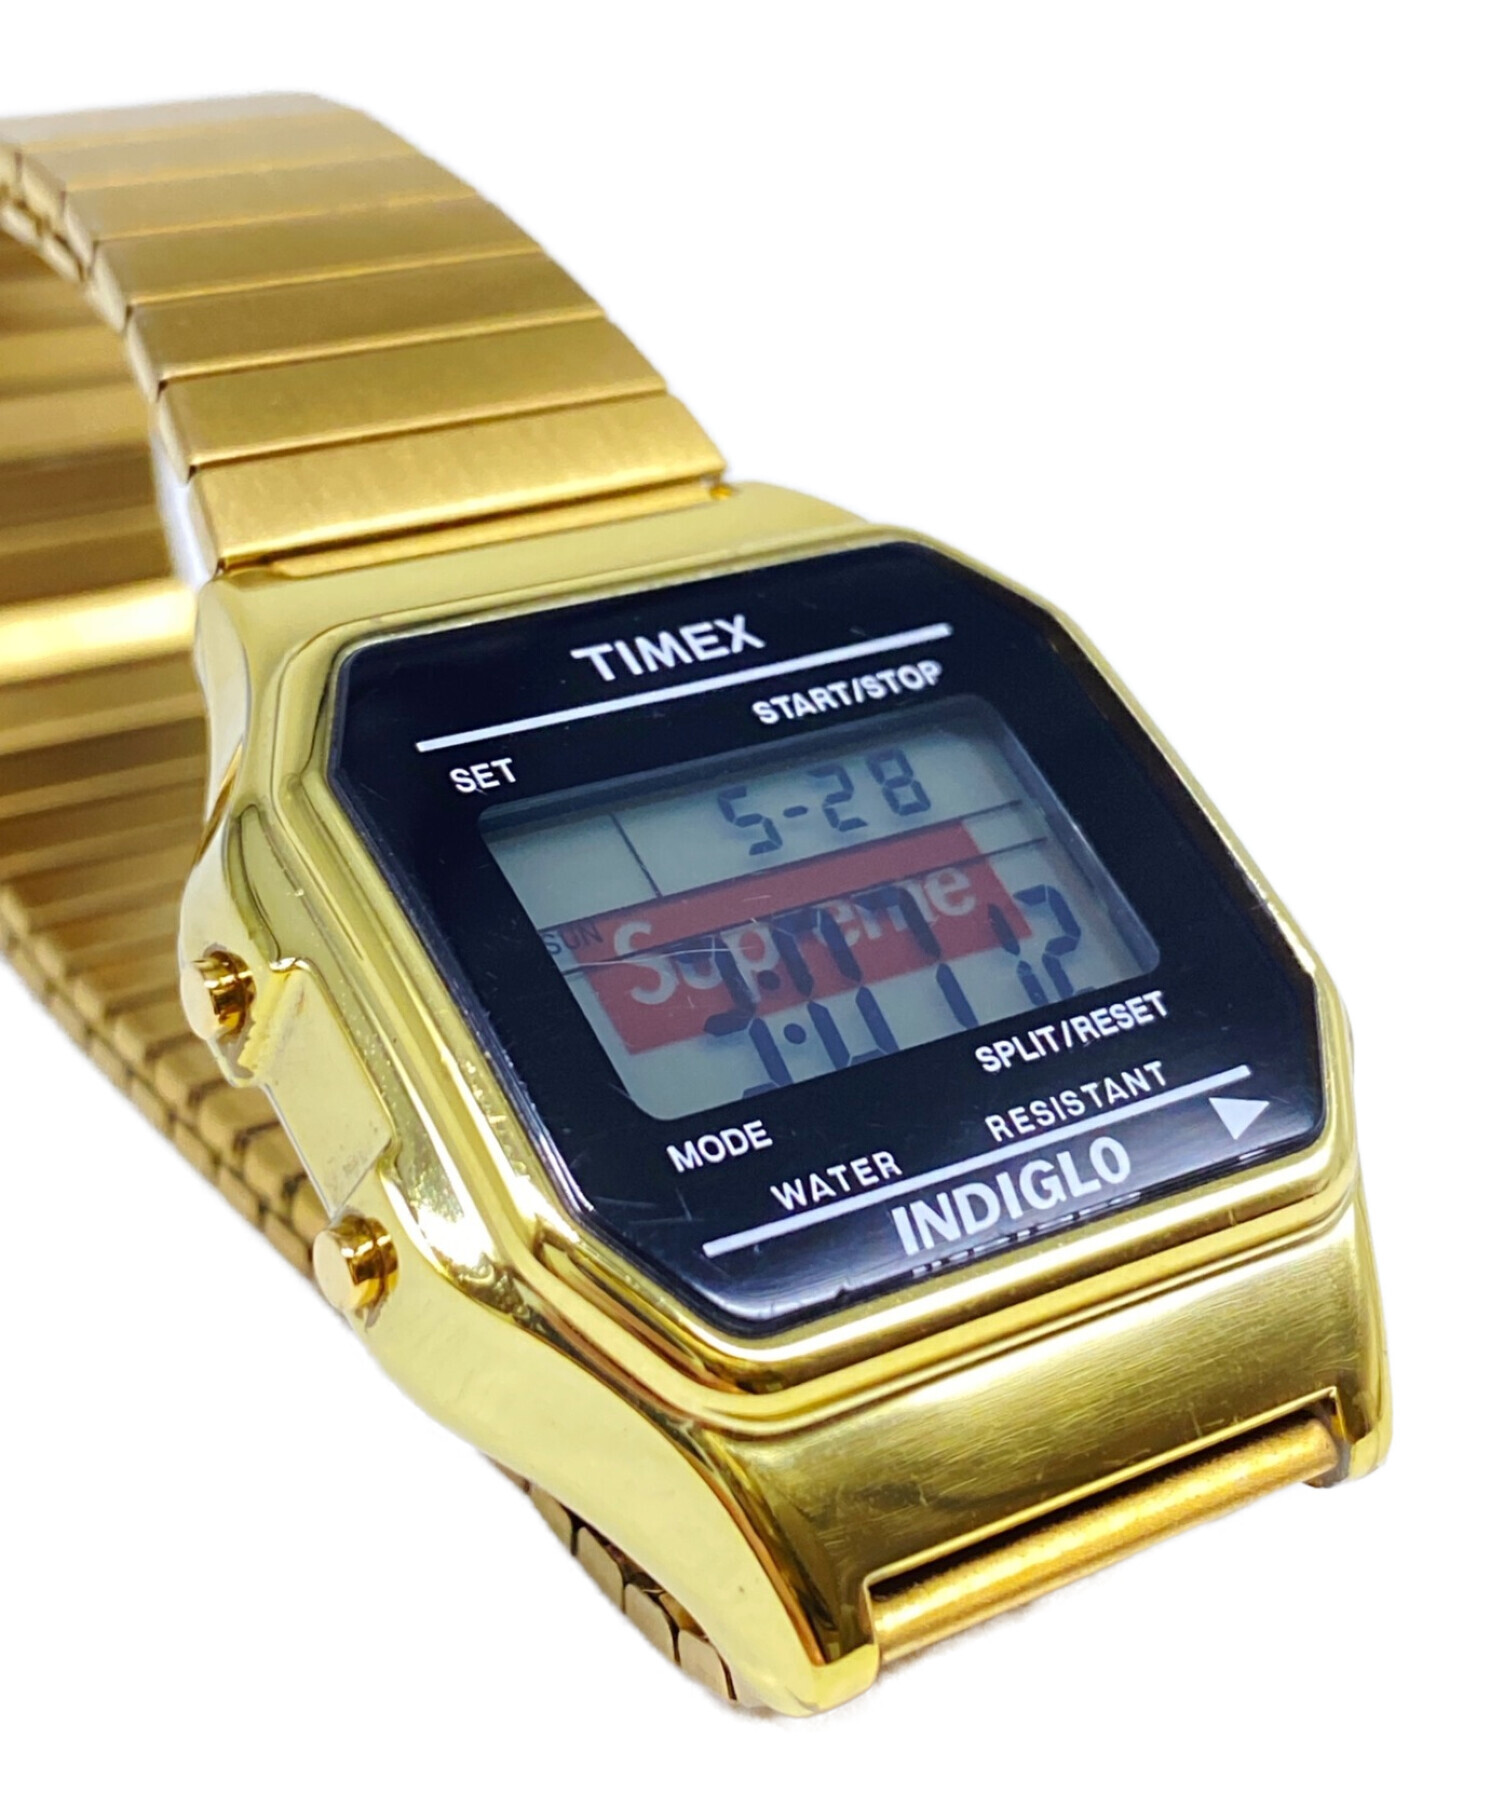 SUPREME (シュプリーム) TIMEX (タイメックス) Digital Watch